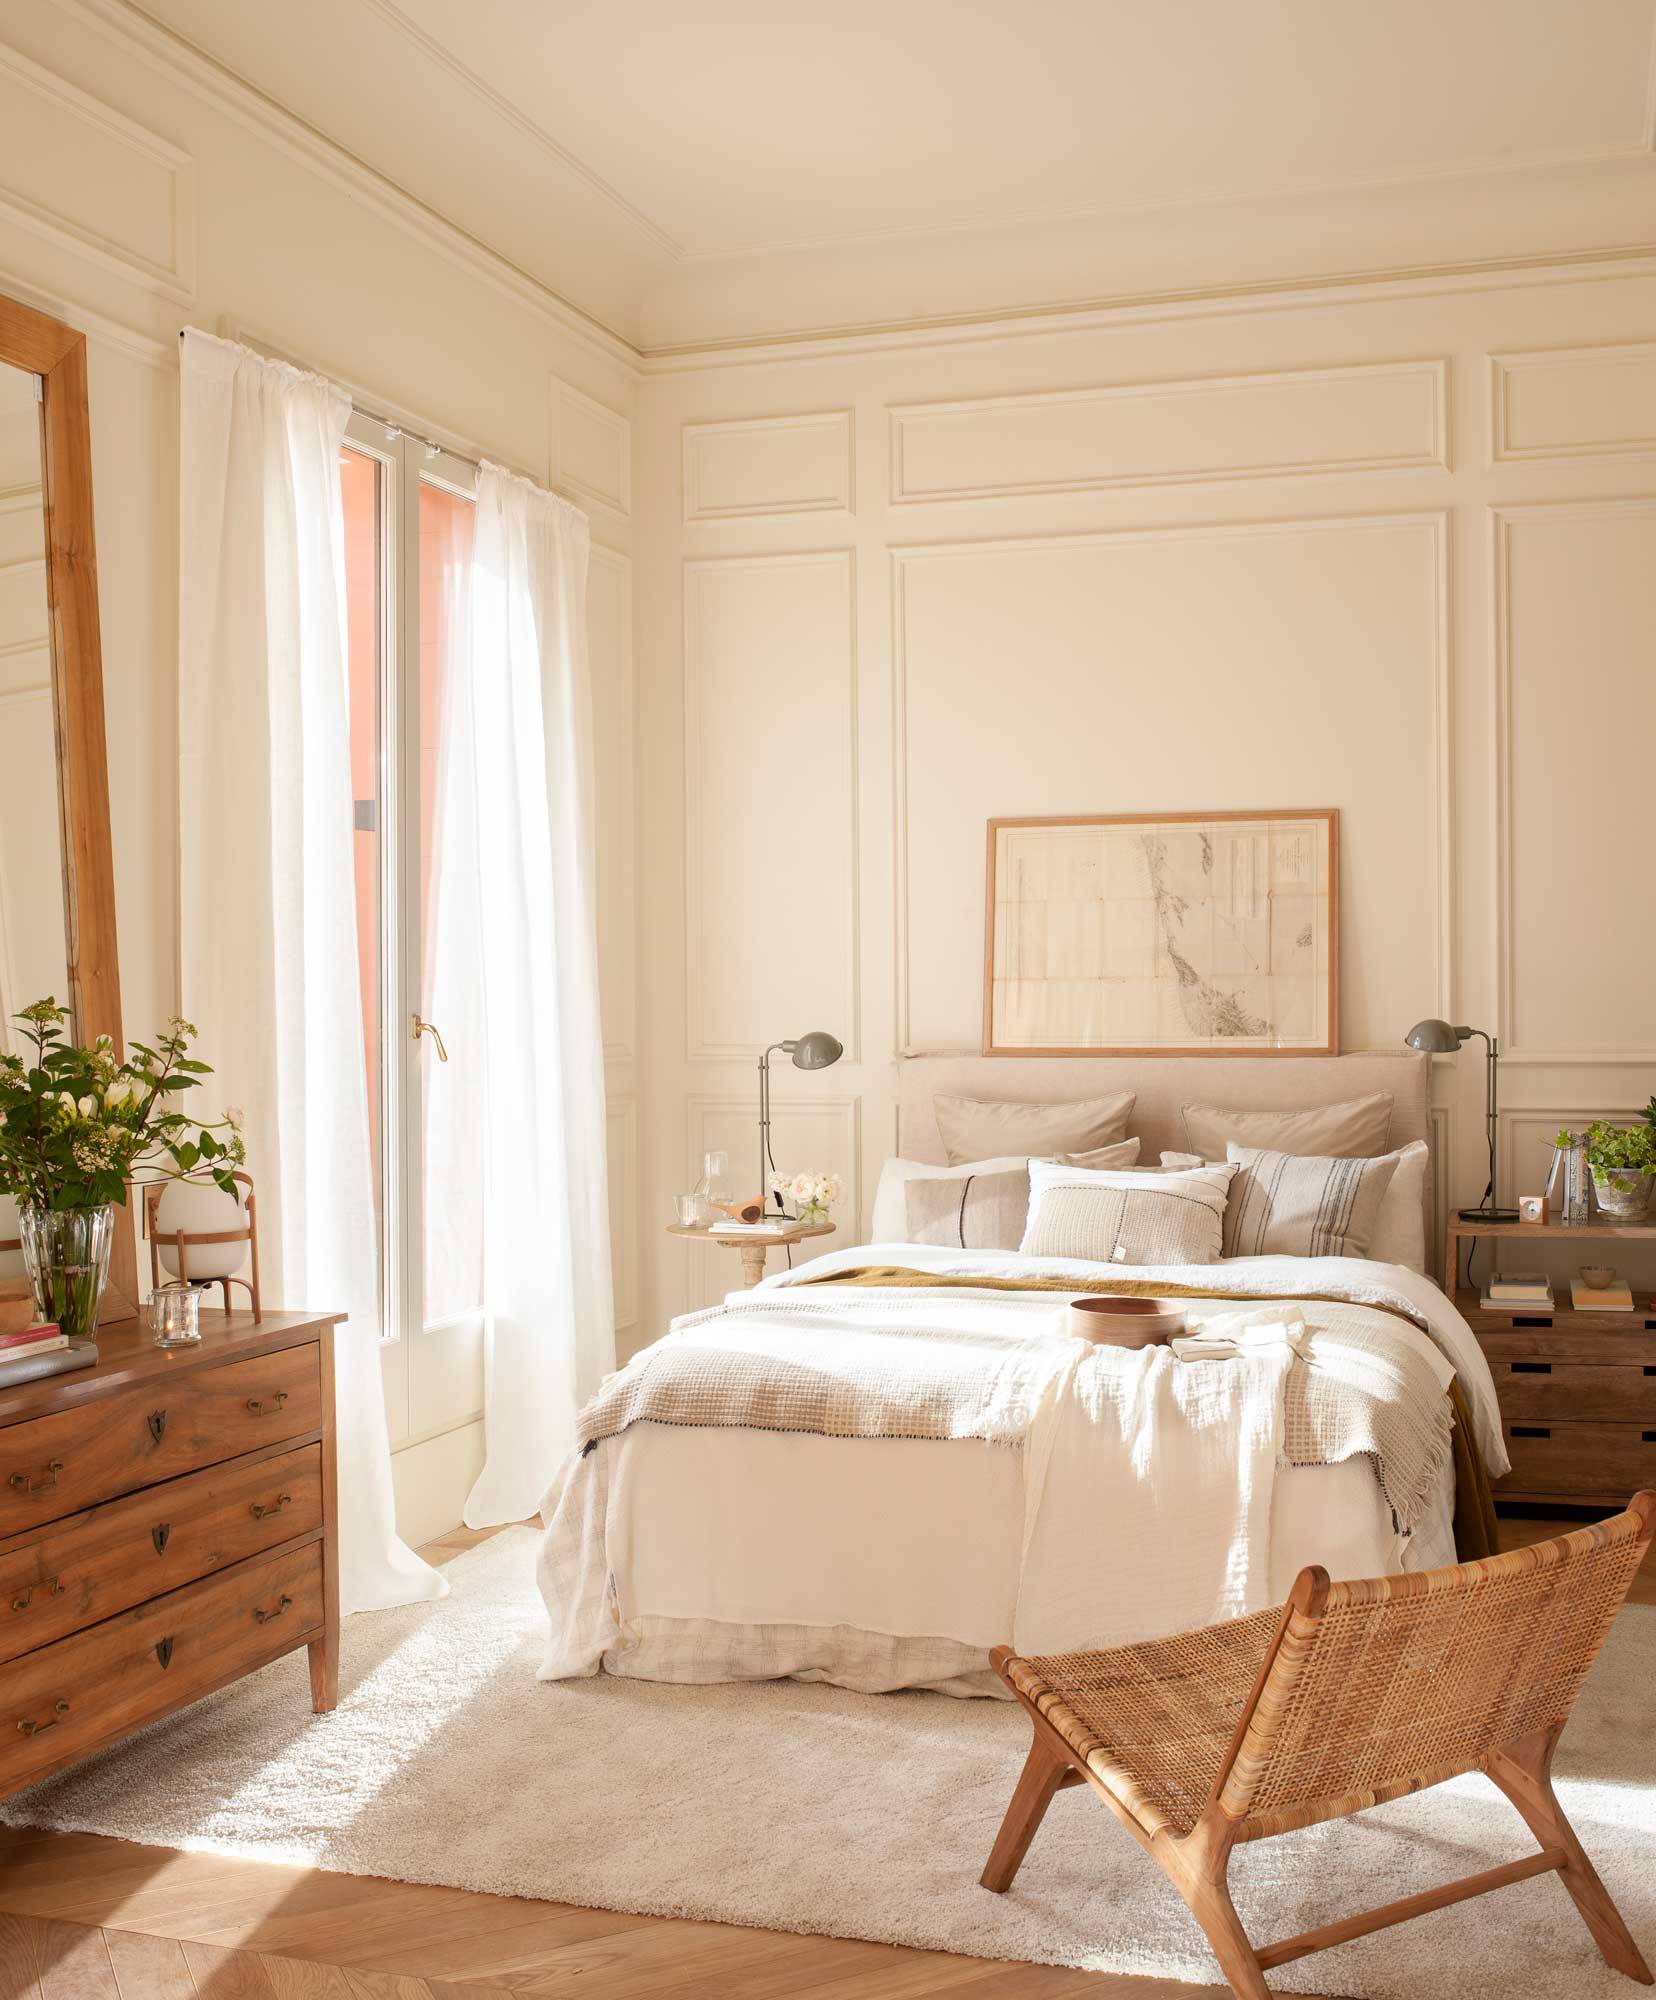 Dormitorio clásico en blanco con butaca de ratán y molduras decorativas en las paredes 00501570 O